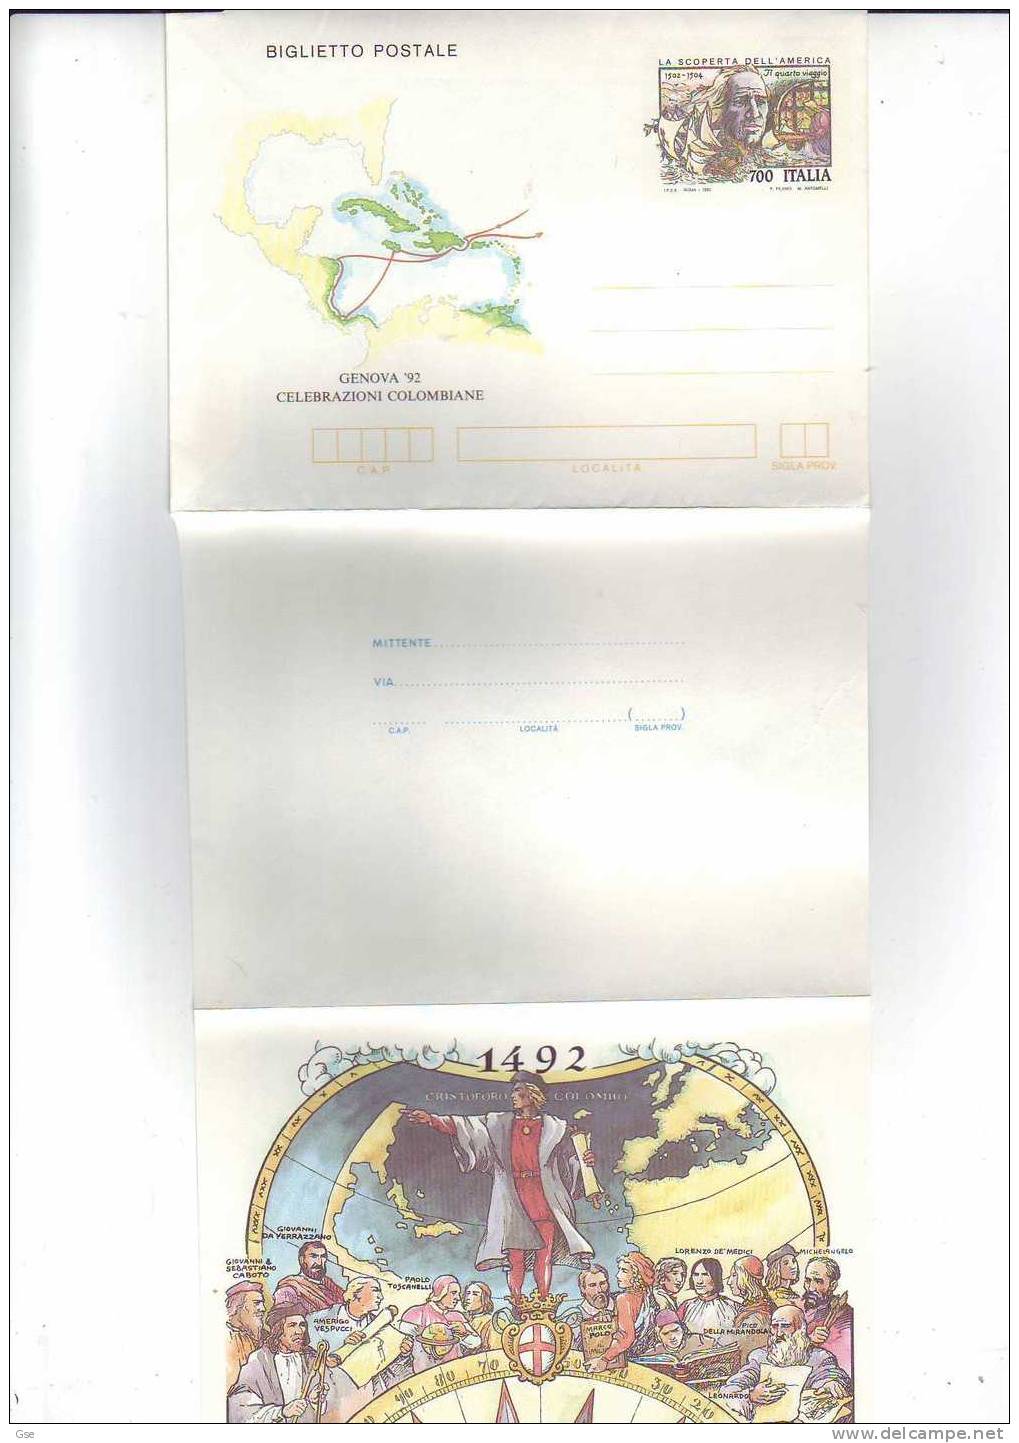 ITALIA 1992 - Biglietto Postale Nuovo - Cristoforo Colombo - Christophe Colomb